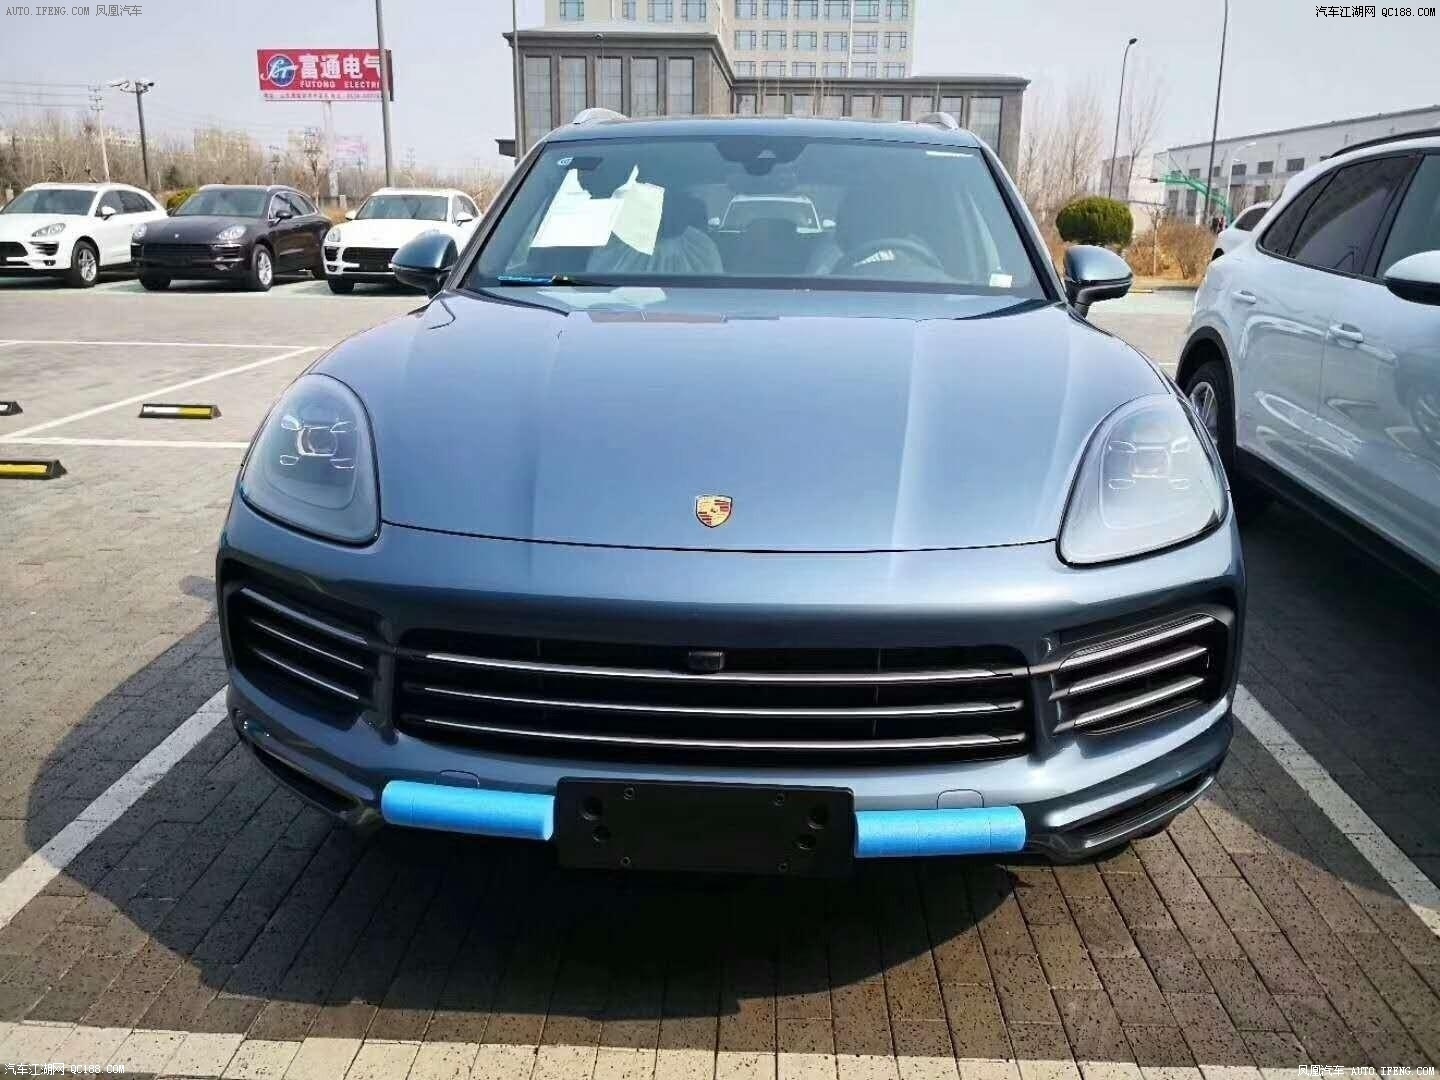 【图】2015款保时捷卡宴Turbo S官图_网易汽车